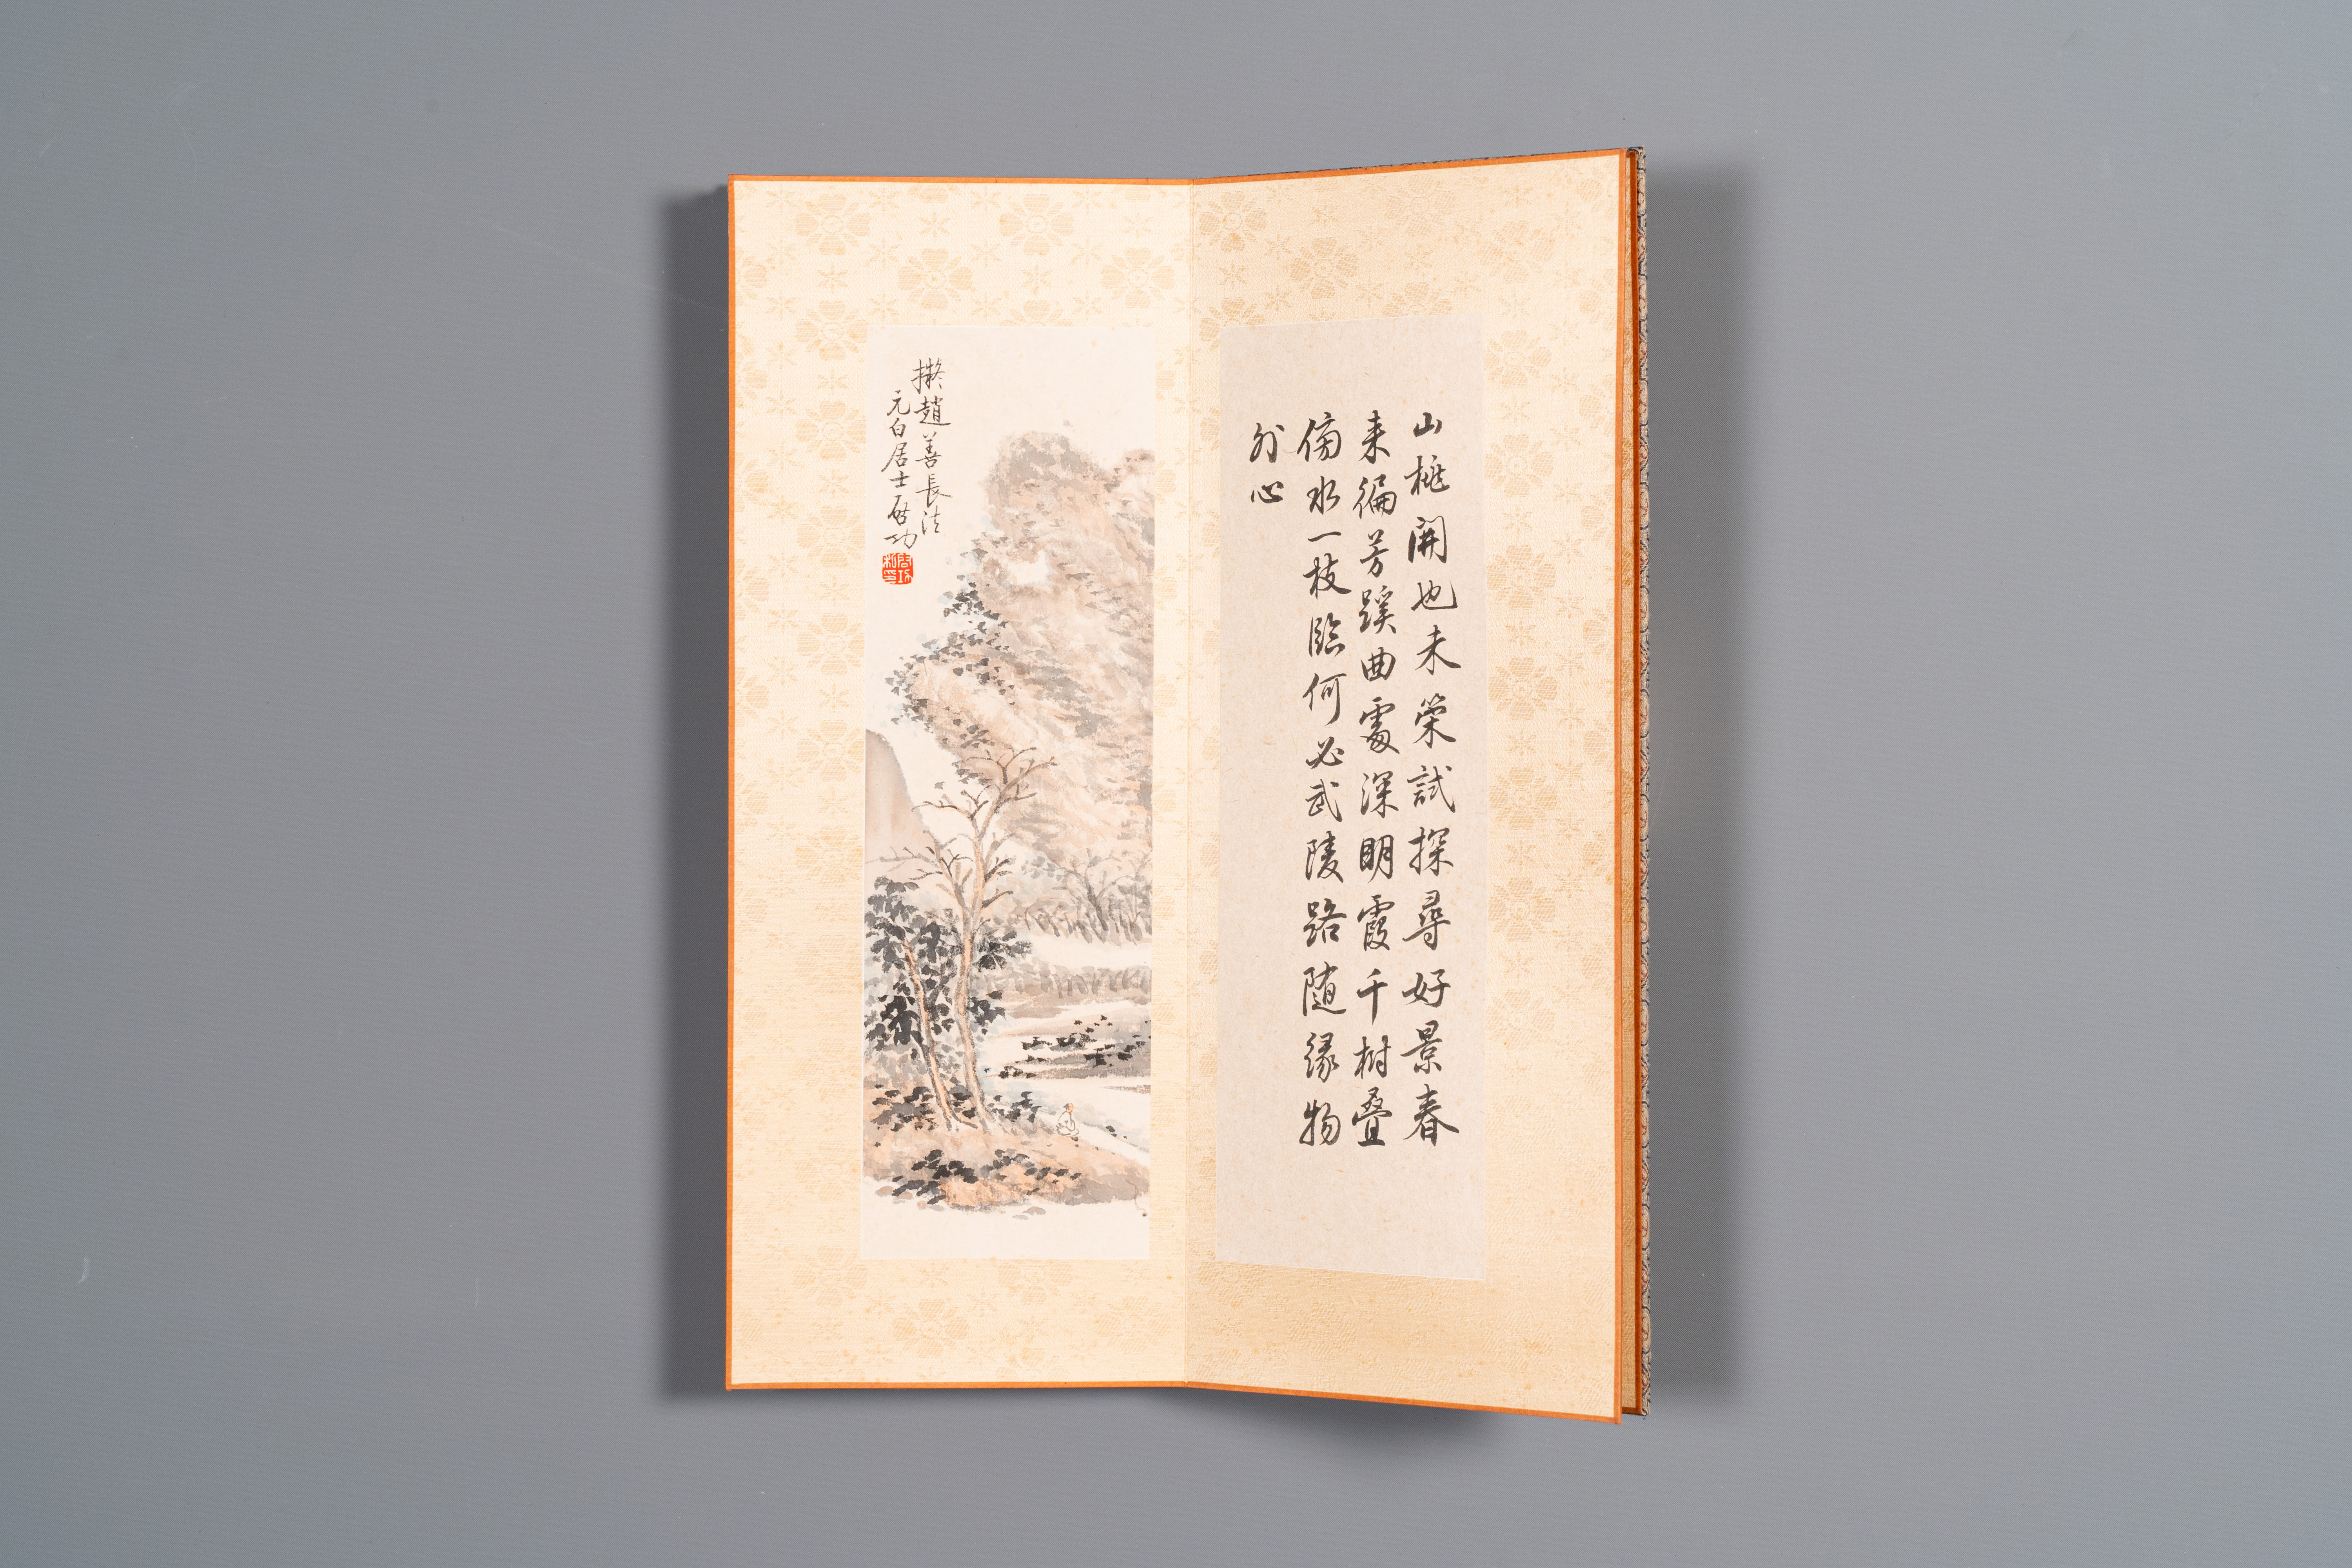 Three albums: 'Jiang Hanting æ±Ÿå¯’æ±€ (1904-1963), Lin Sanzhi æž—æ•£ä¹‹ (1898-1989) and Qi Gong å¯ - Image 17 of 23